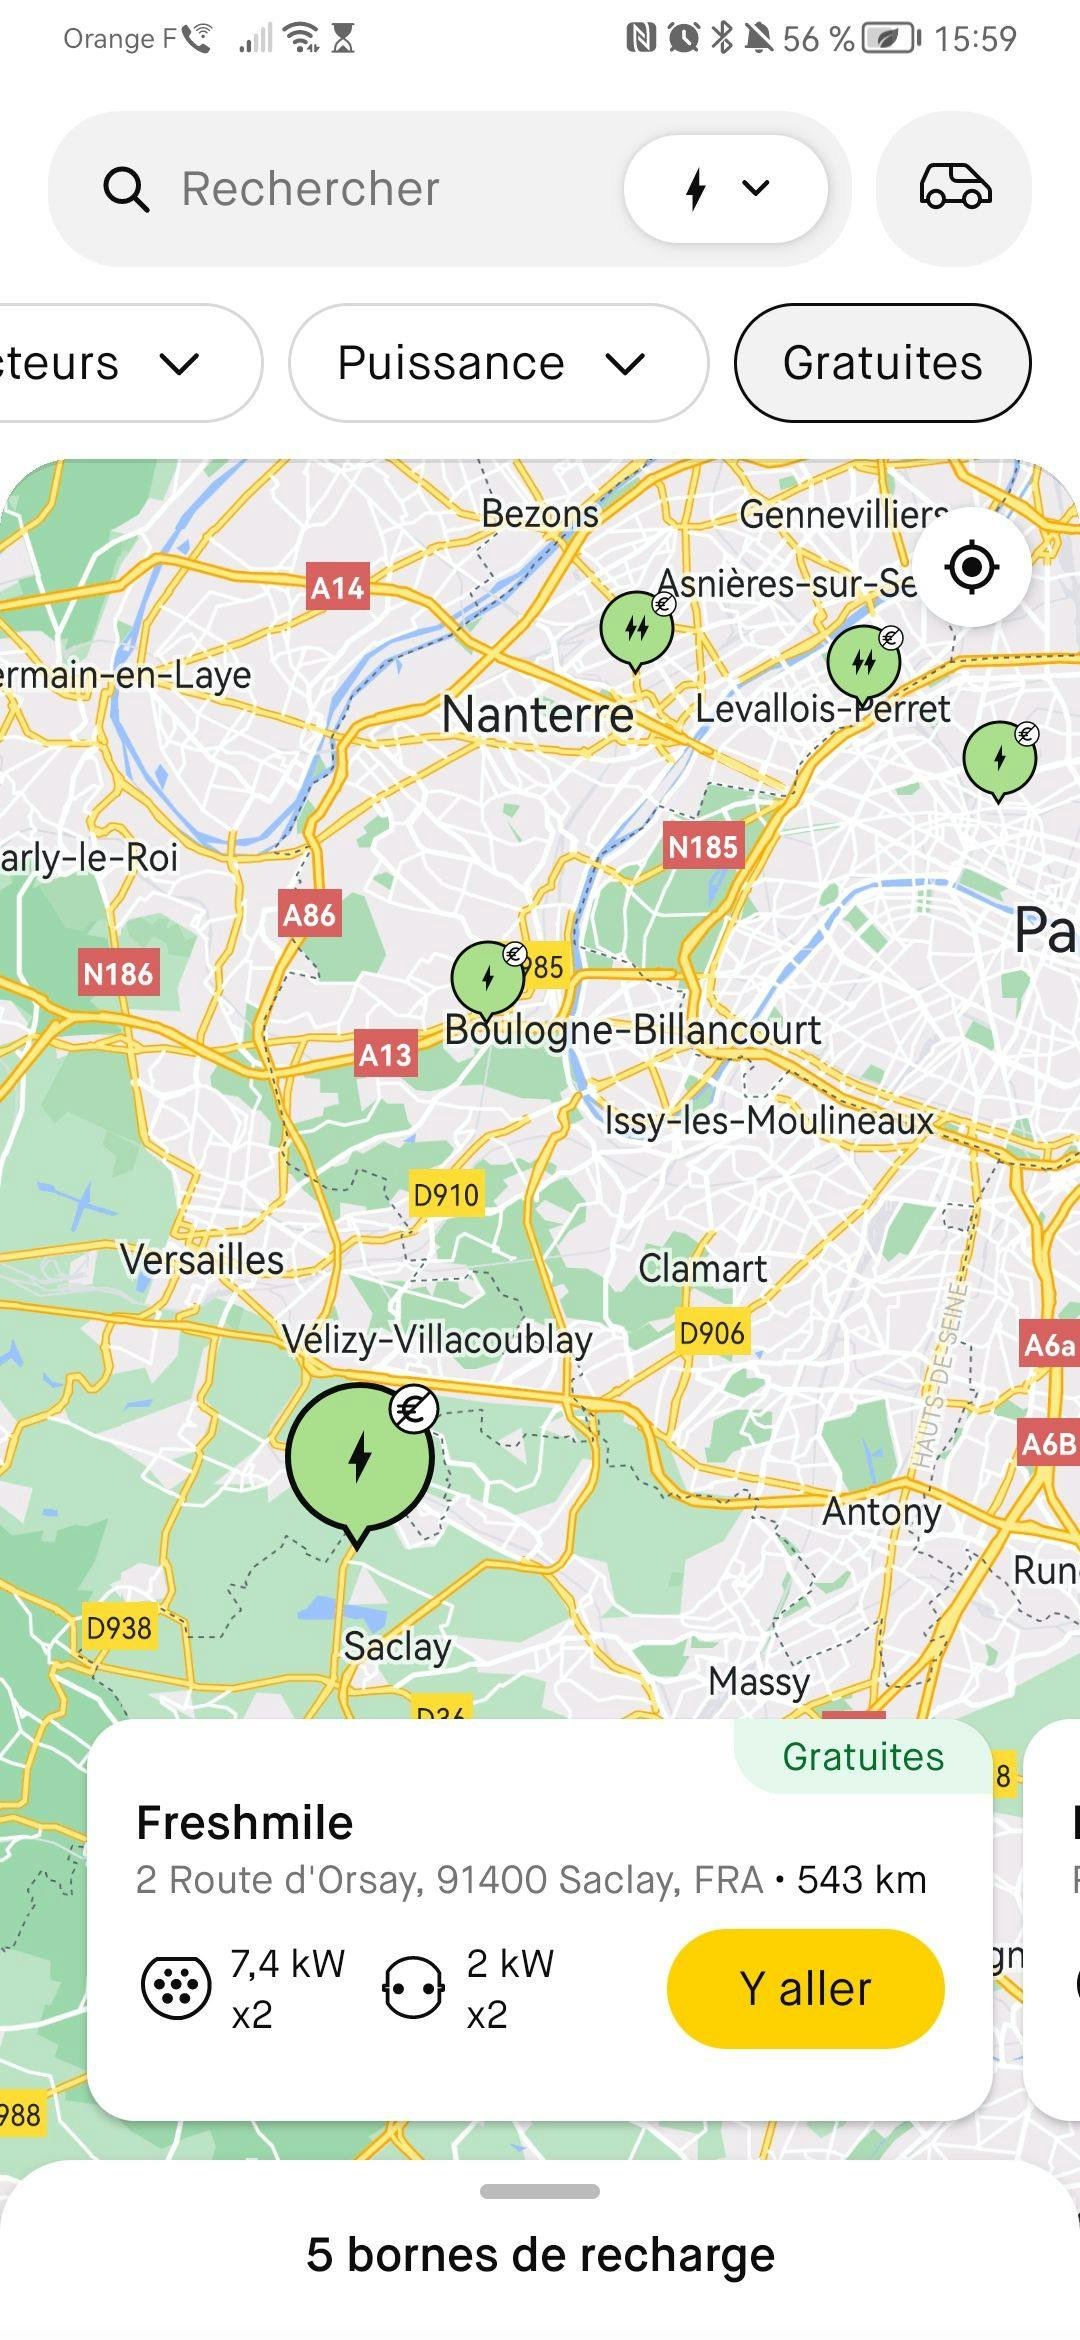 Trouver le filtre des bornes gratuites sur l'application mobile Roole Map.